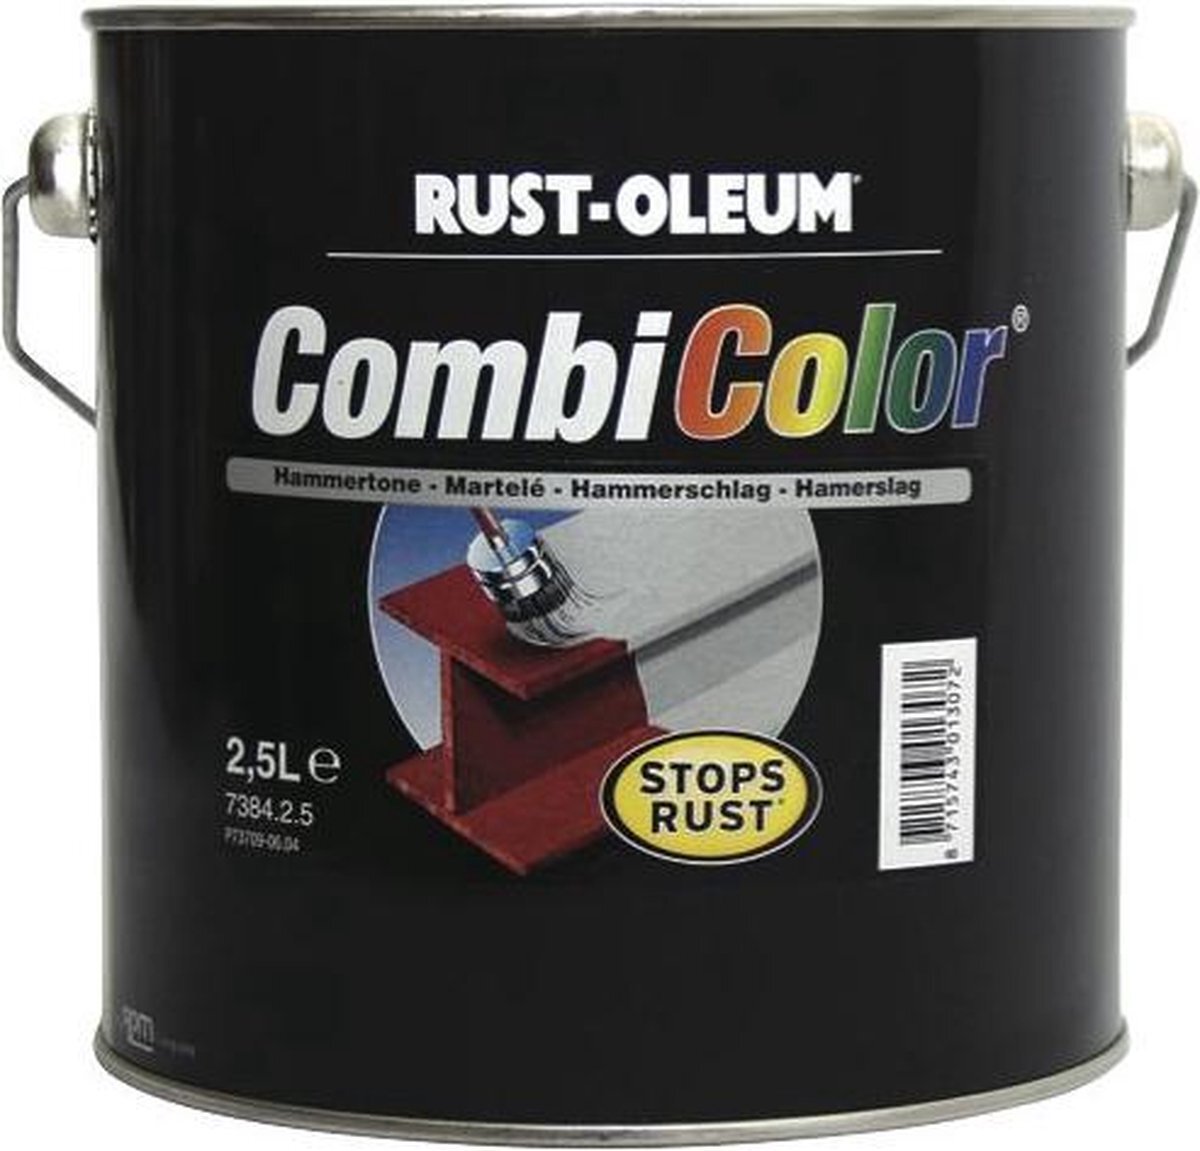 Rust-oleum Combicolor Hamerslag - Lichtgroen 7332 Verpakking: 2,5 liter